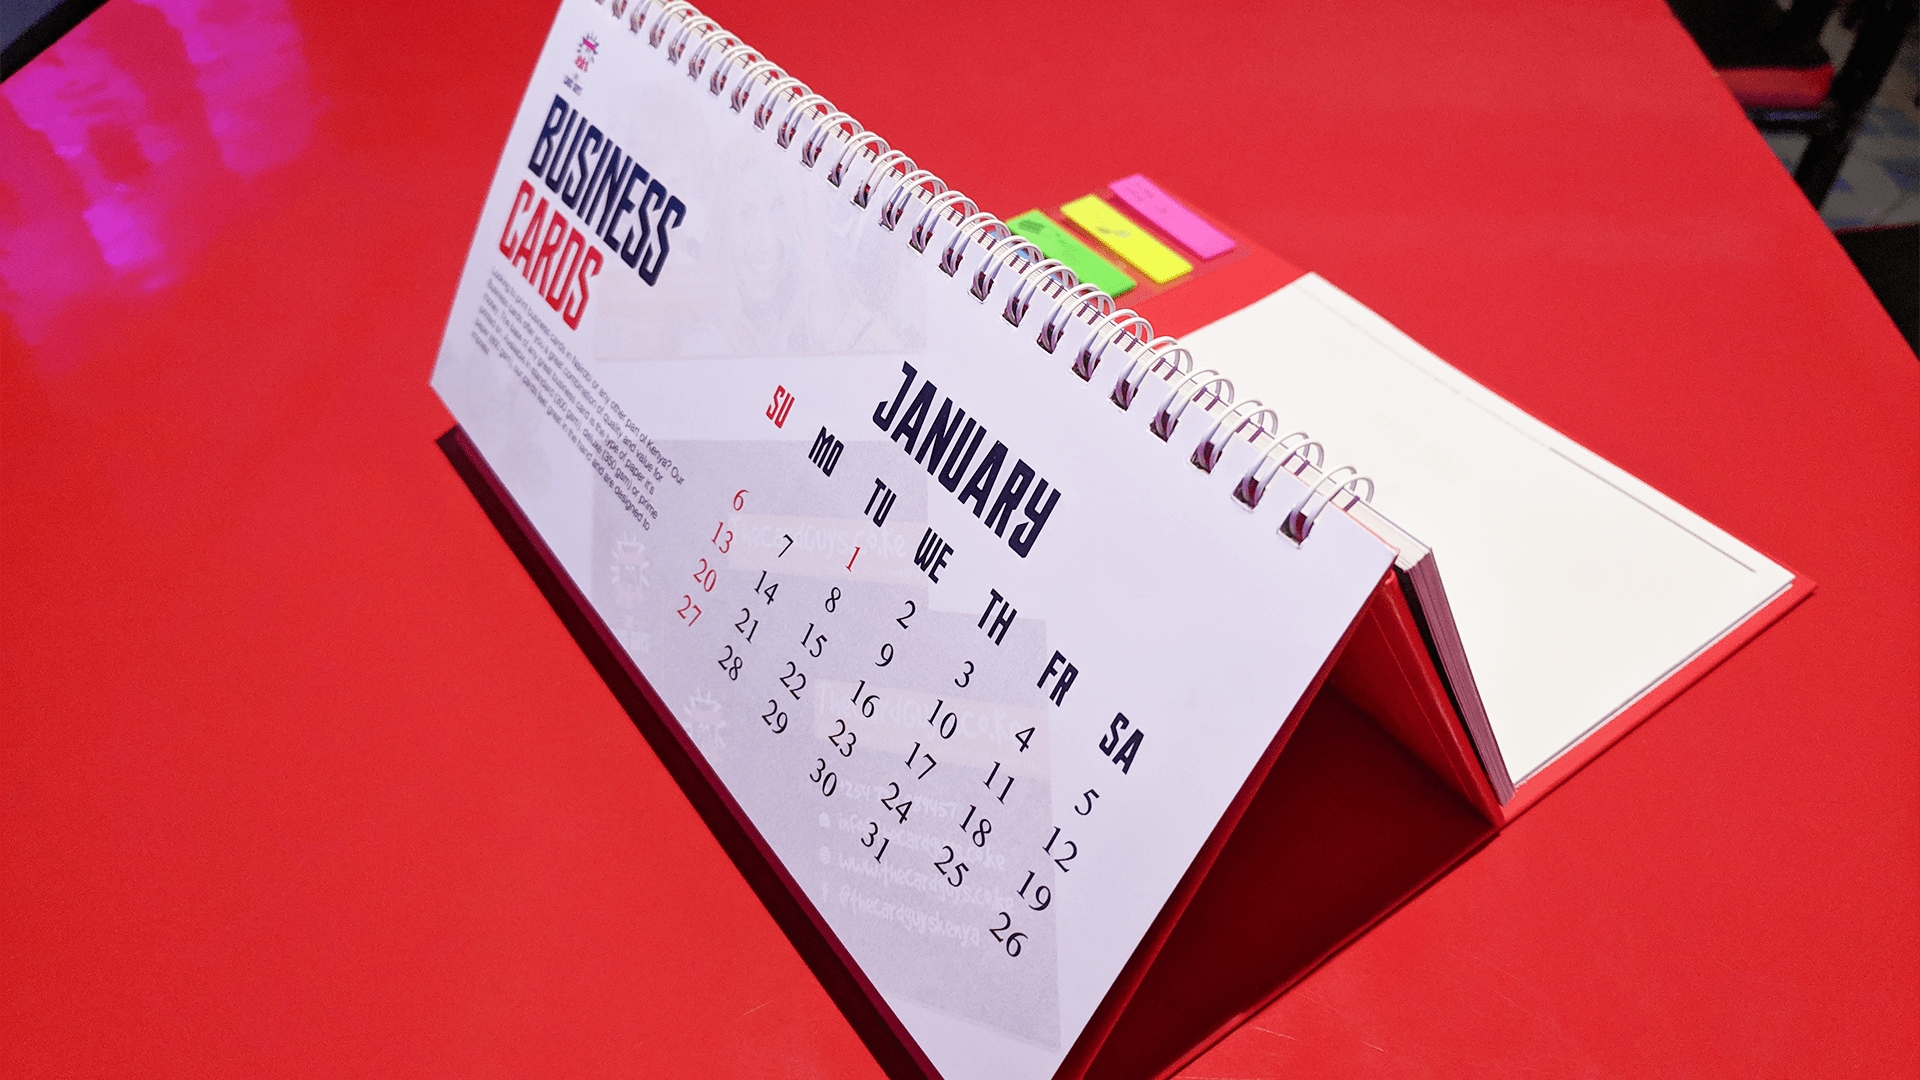 Print Modern Desk Calendars Online In Nairobi Kenya | The Remarkable How Much Are Desk Calendars In Nairobi Kenya